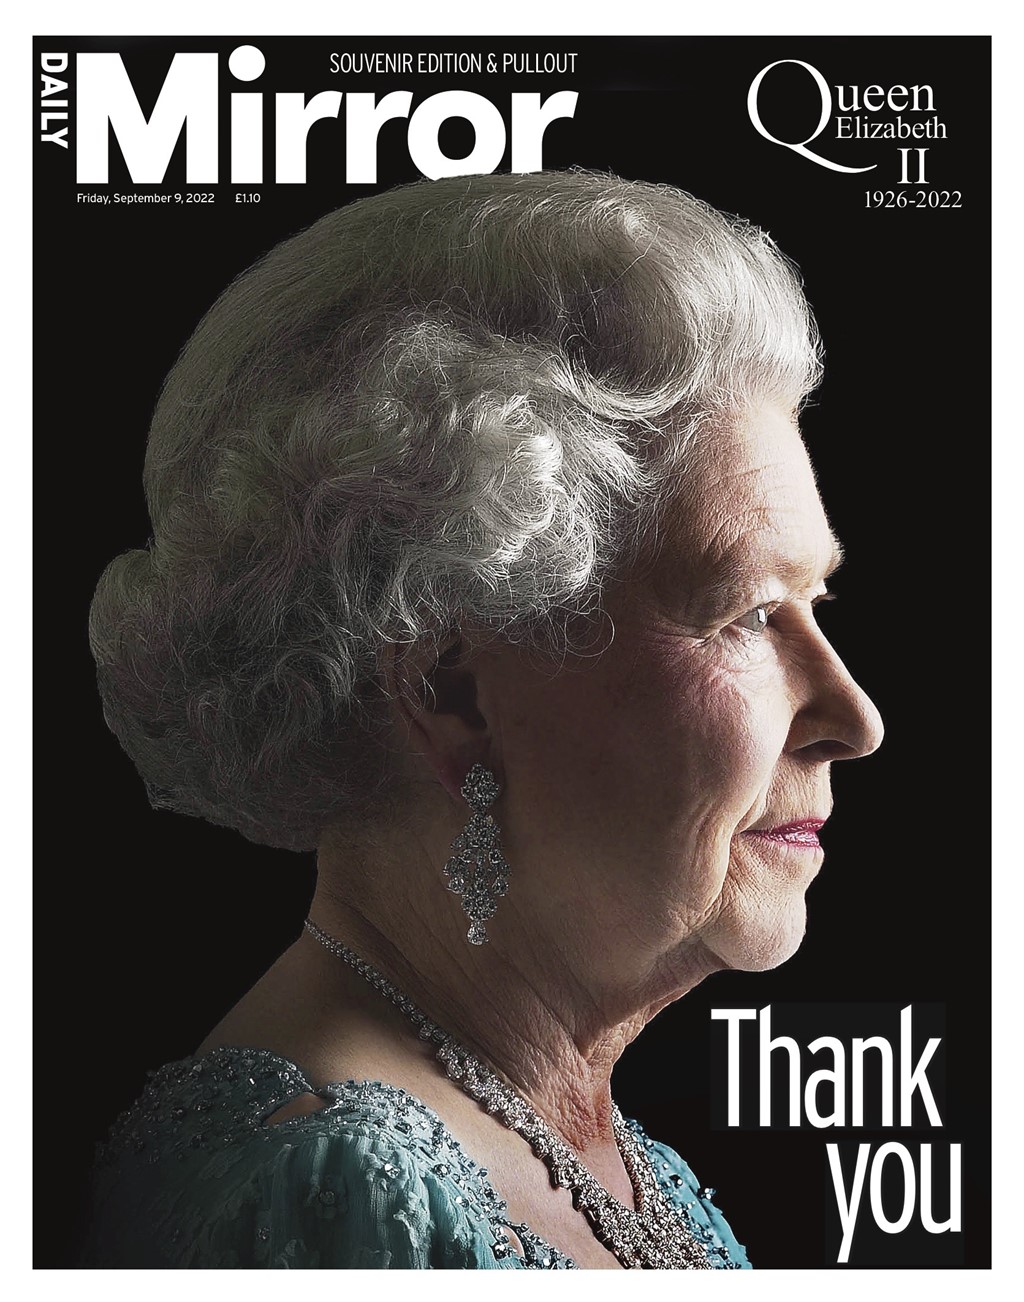 Cobertura imprensa britânica morte rainha Elizabeth II capas primeiras páginas jornal Daily Mirror